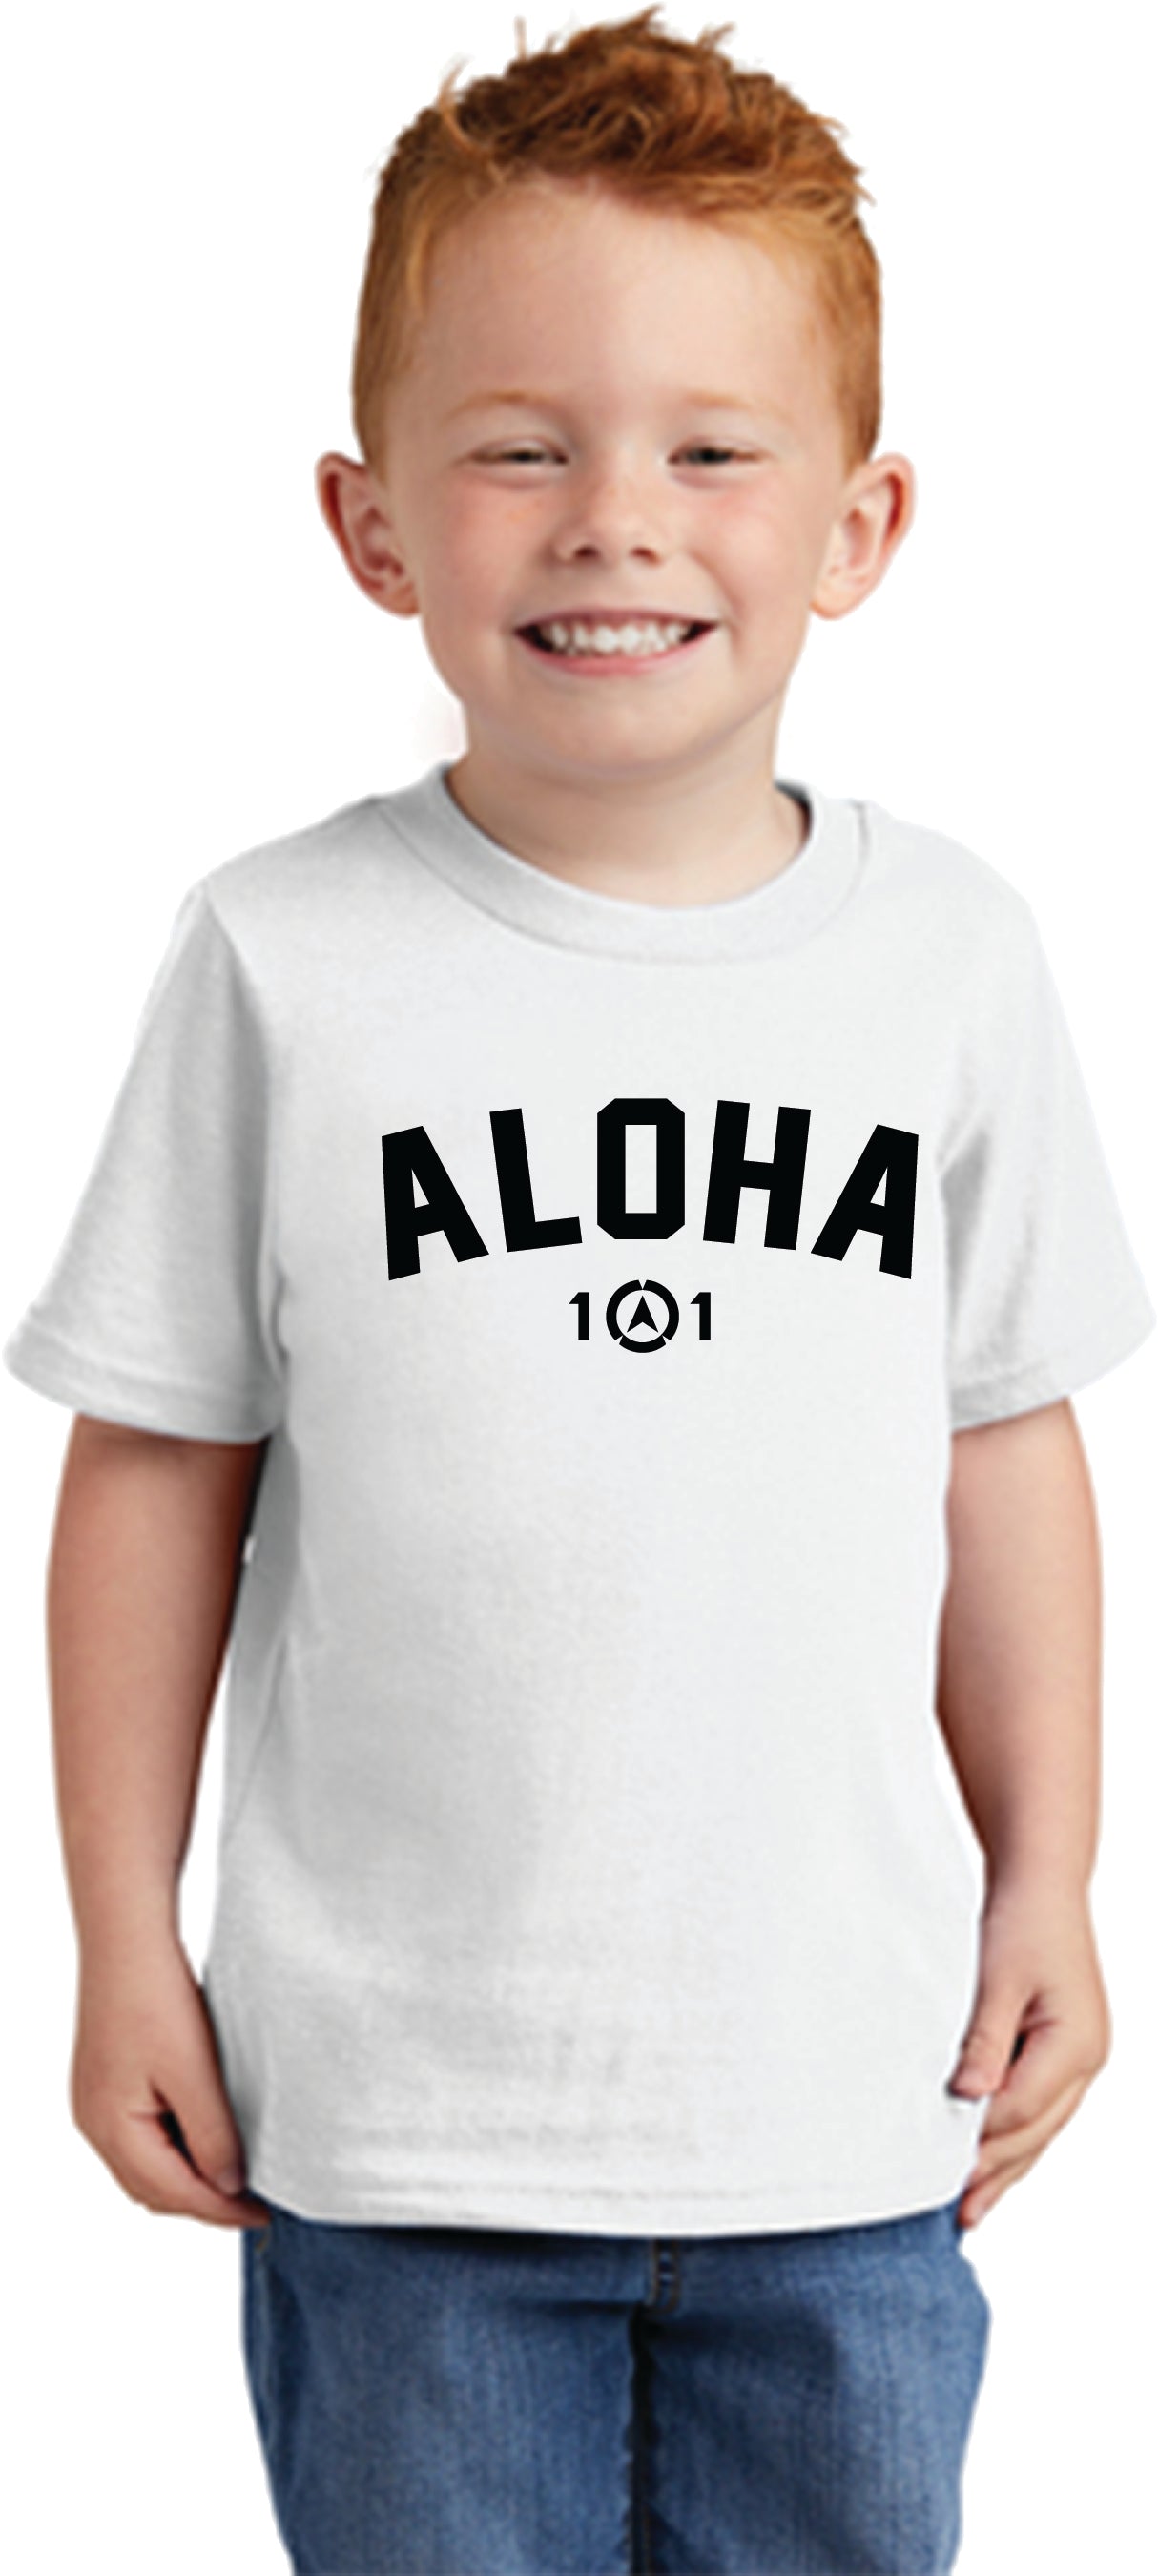 Aloha Tee, Youth & Toddler